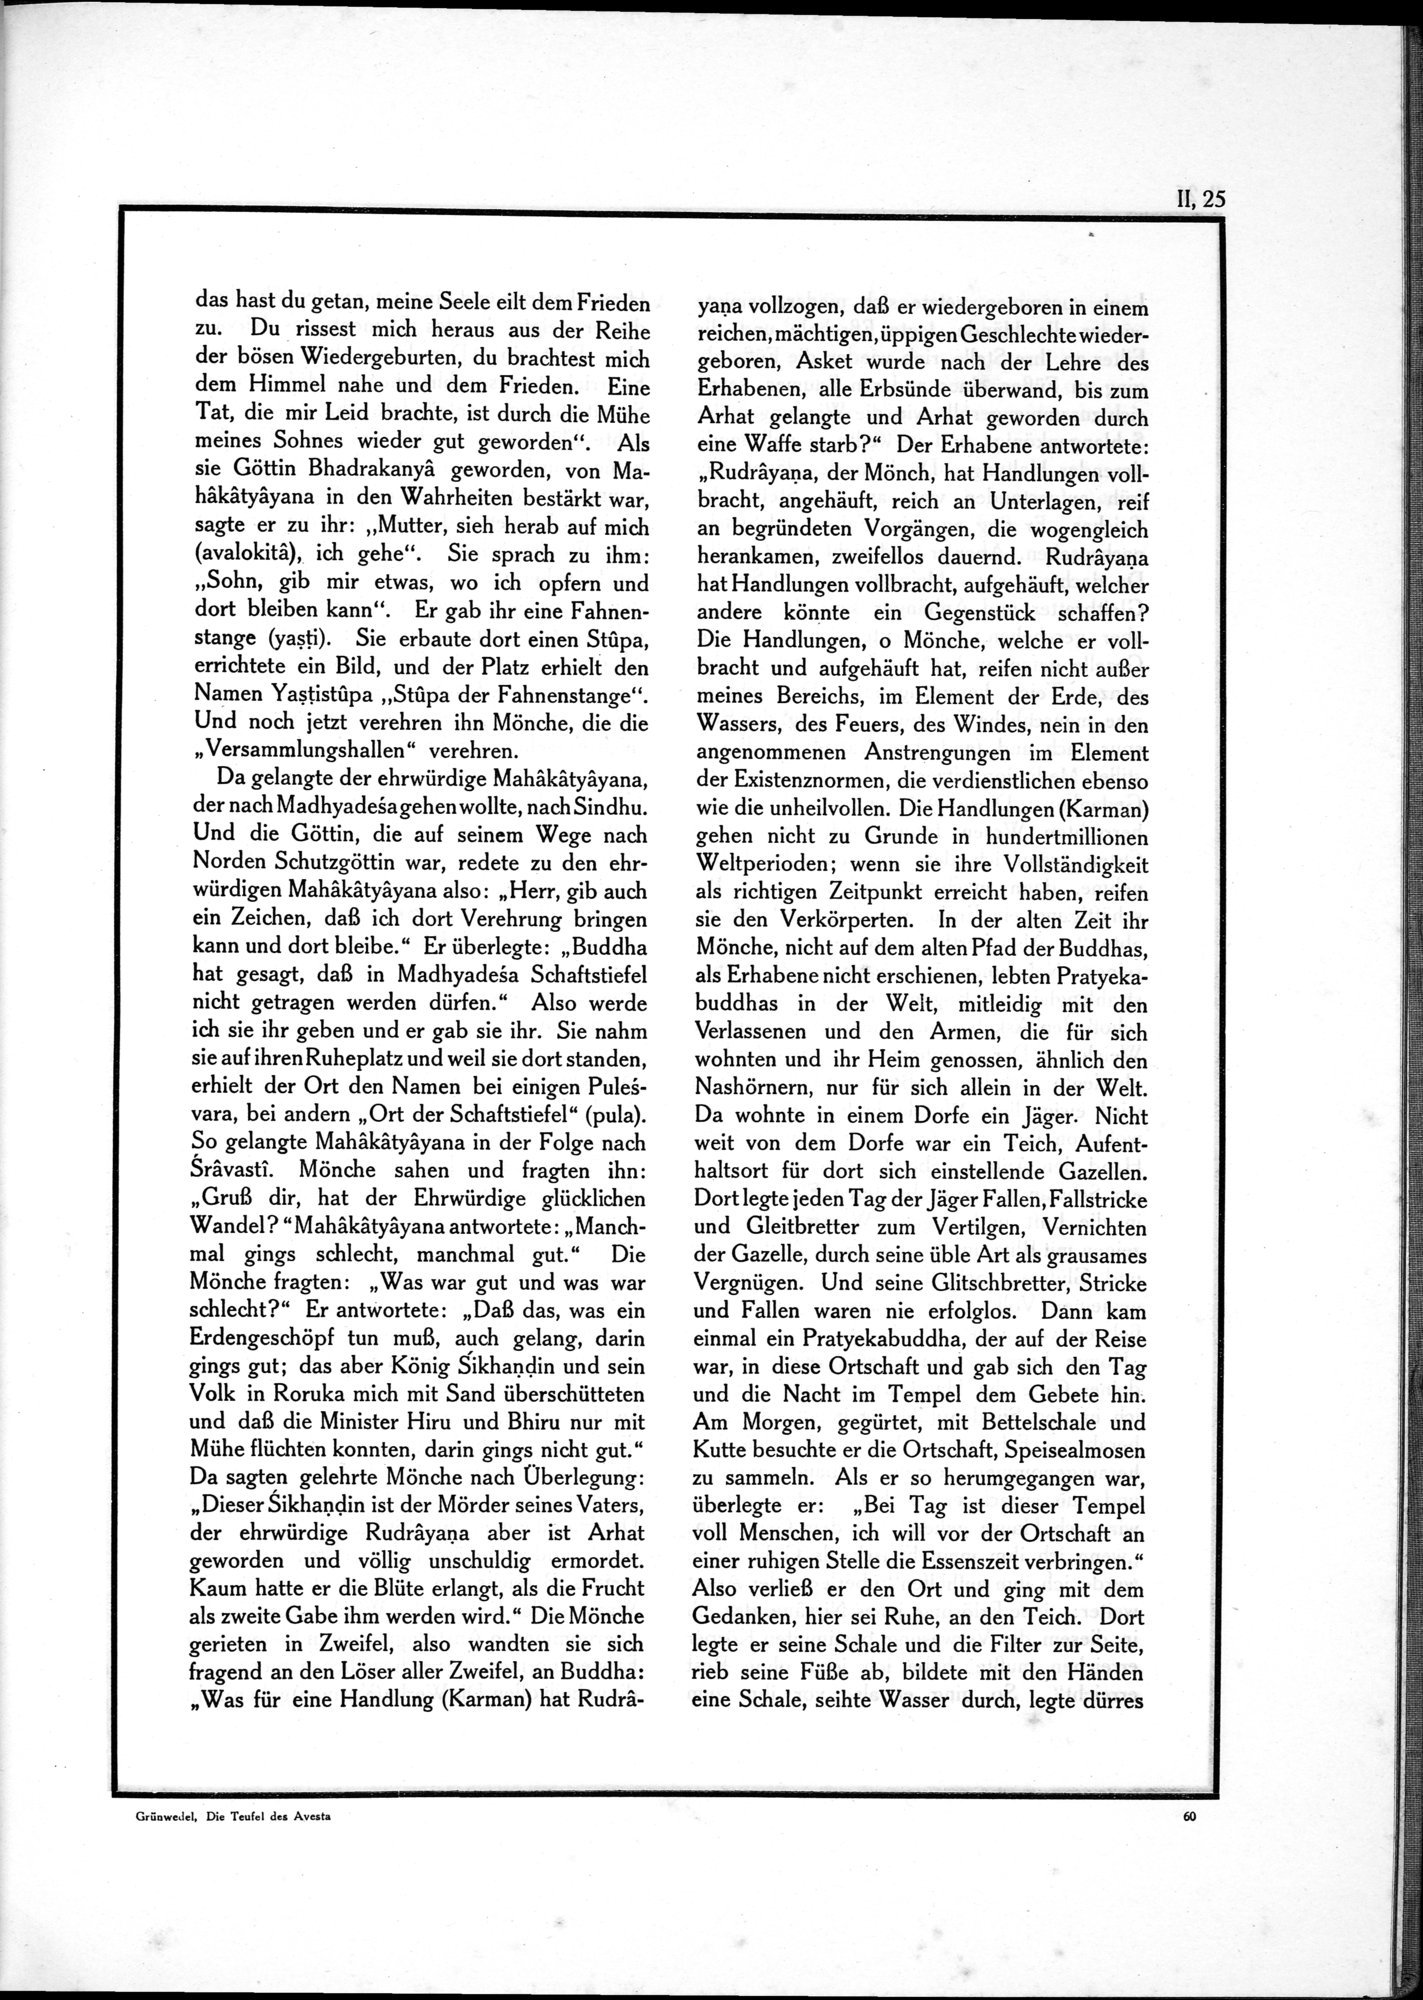 Die Teufel des Avesta und Ihre Beziehungen zur Ikonographie des Buddhismus Zentral-Asiens : vol.1 / Page 481 (Grayscale High Resolution Image)